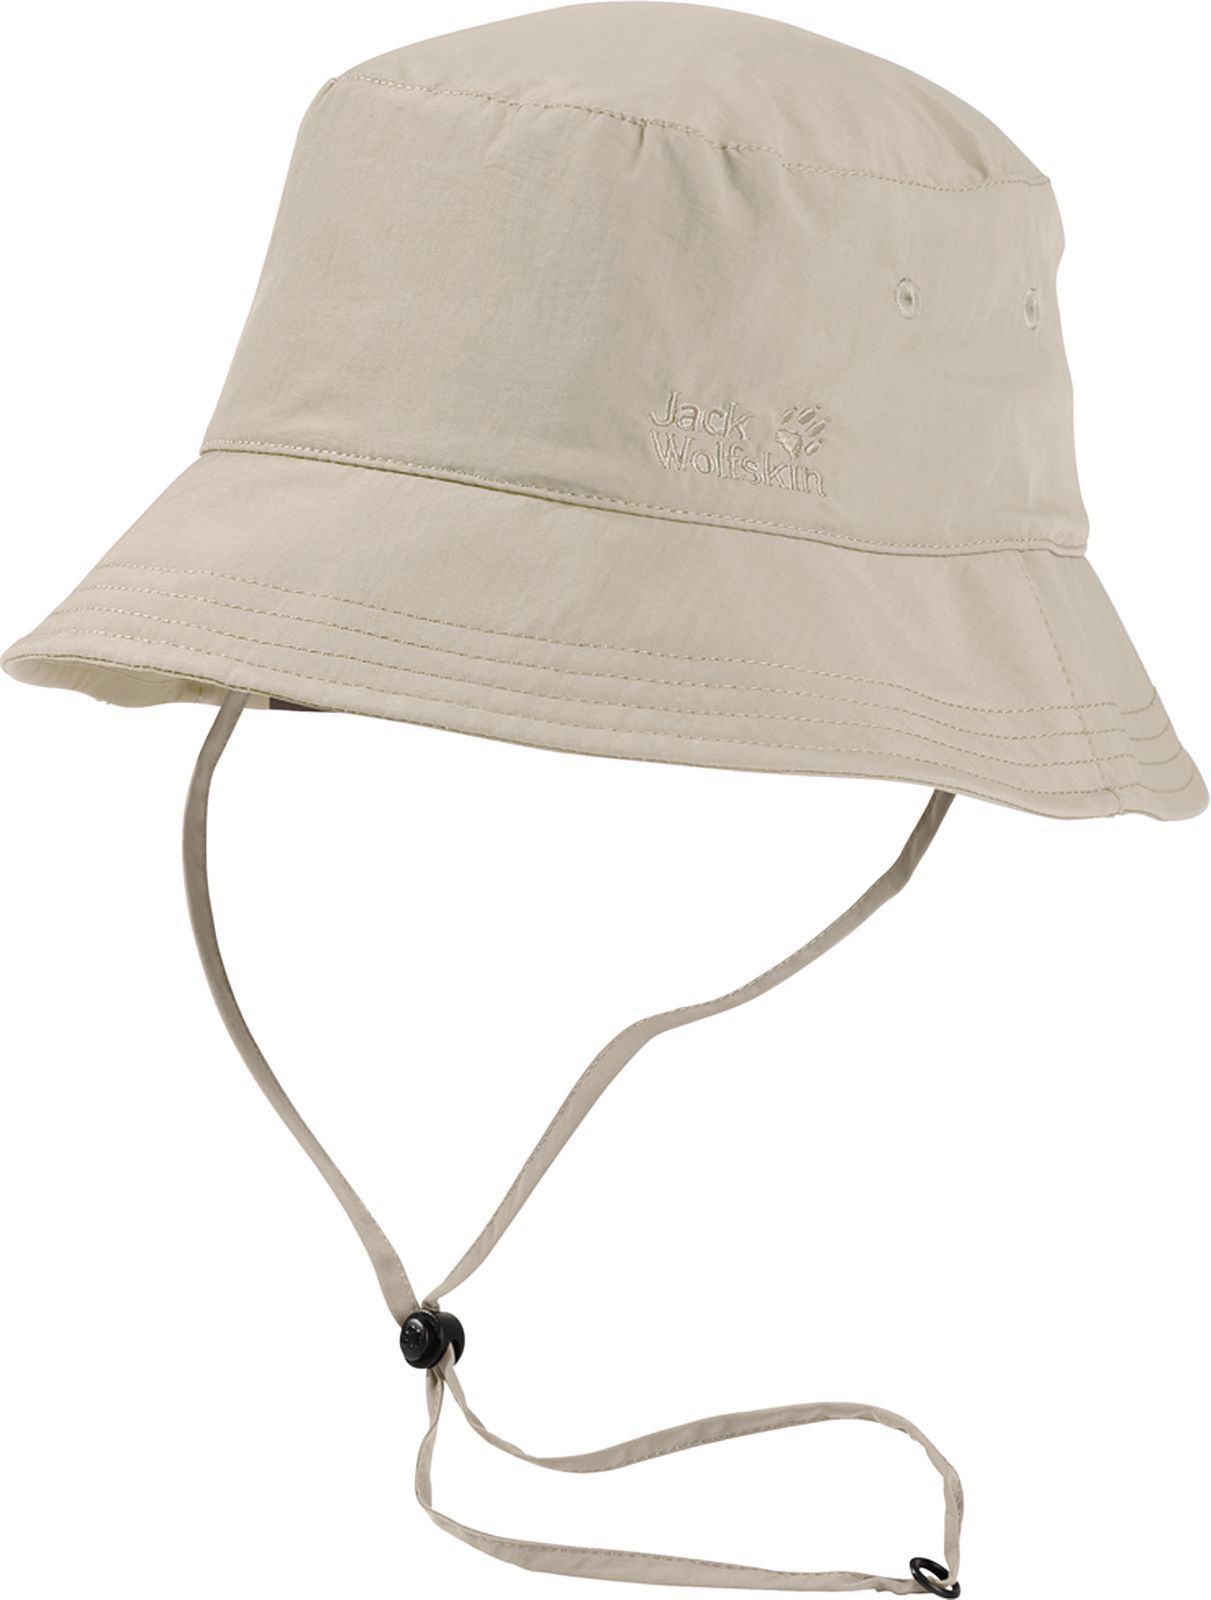  Jack Wolfskin Supplex Sun Hat, : . 1903391-5505.  M (54/57)